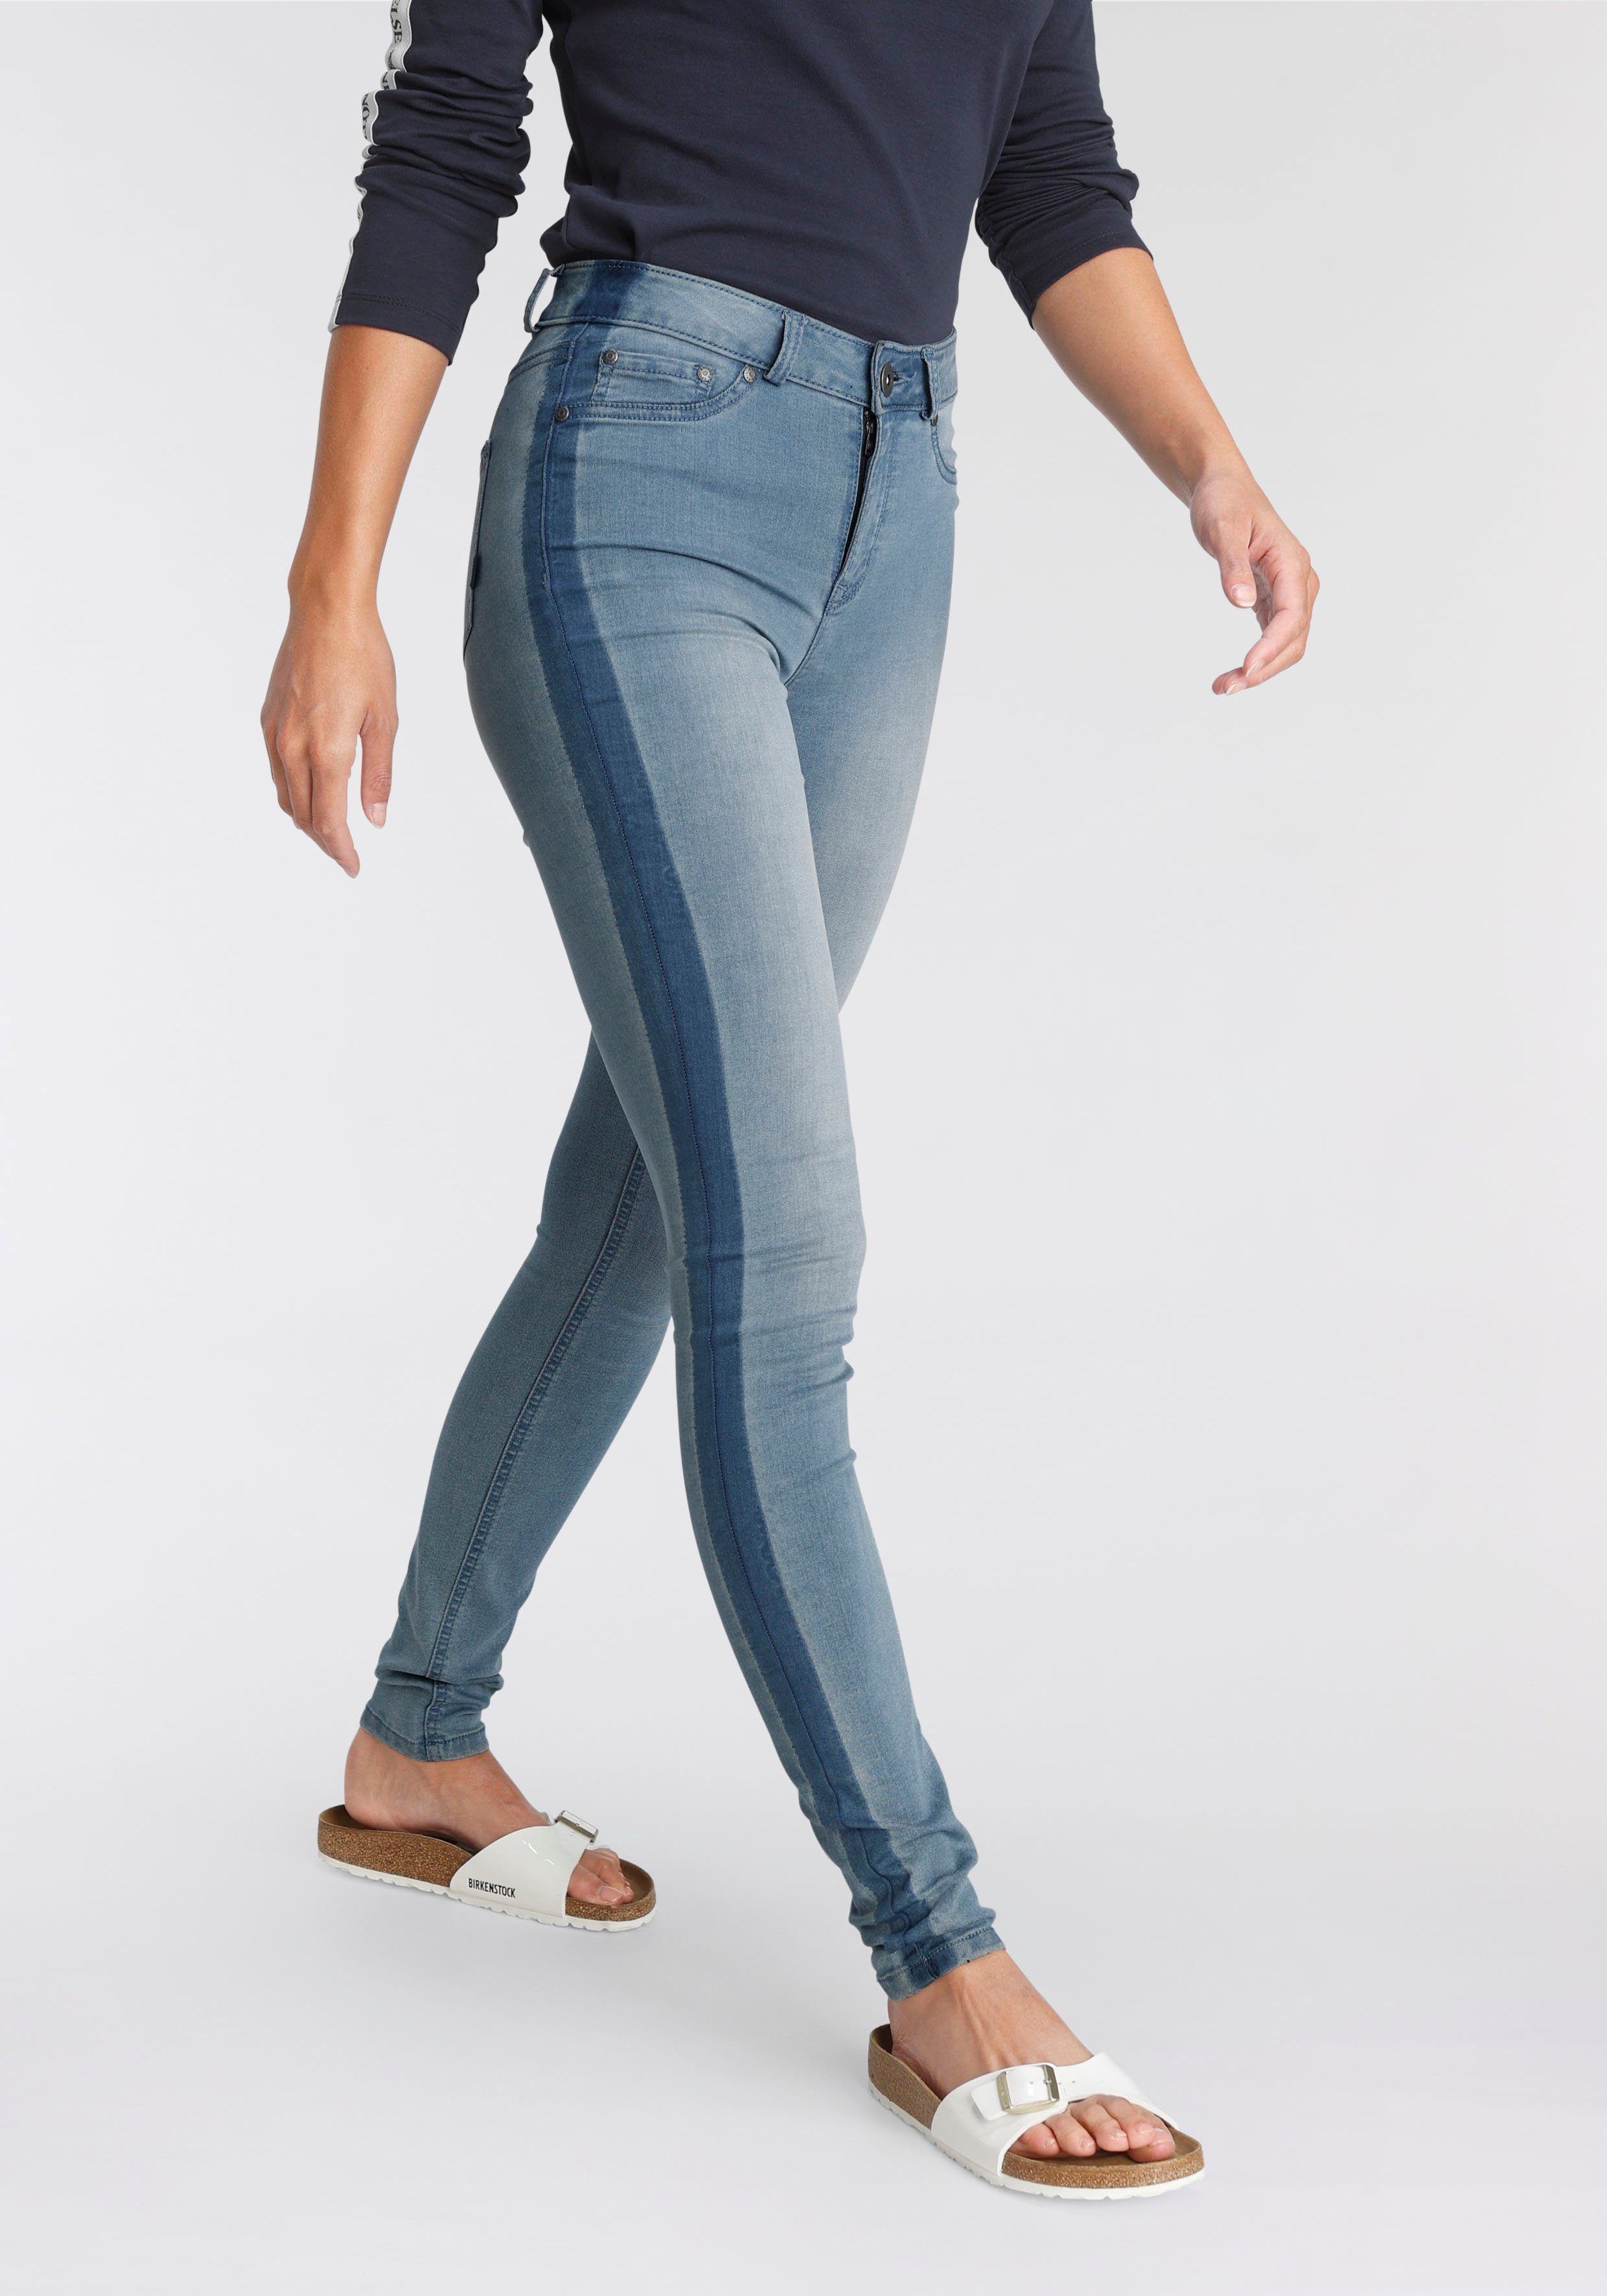 Kaufen Sie es jetzt, Originalprodukt Arizona Skinny-fit-Jeans Ultra mit High Stretch seitlichem Streifen Waist blue-used